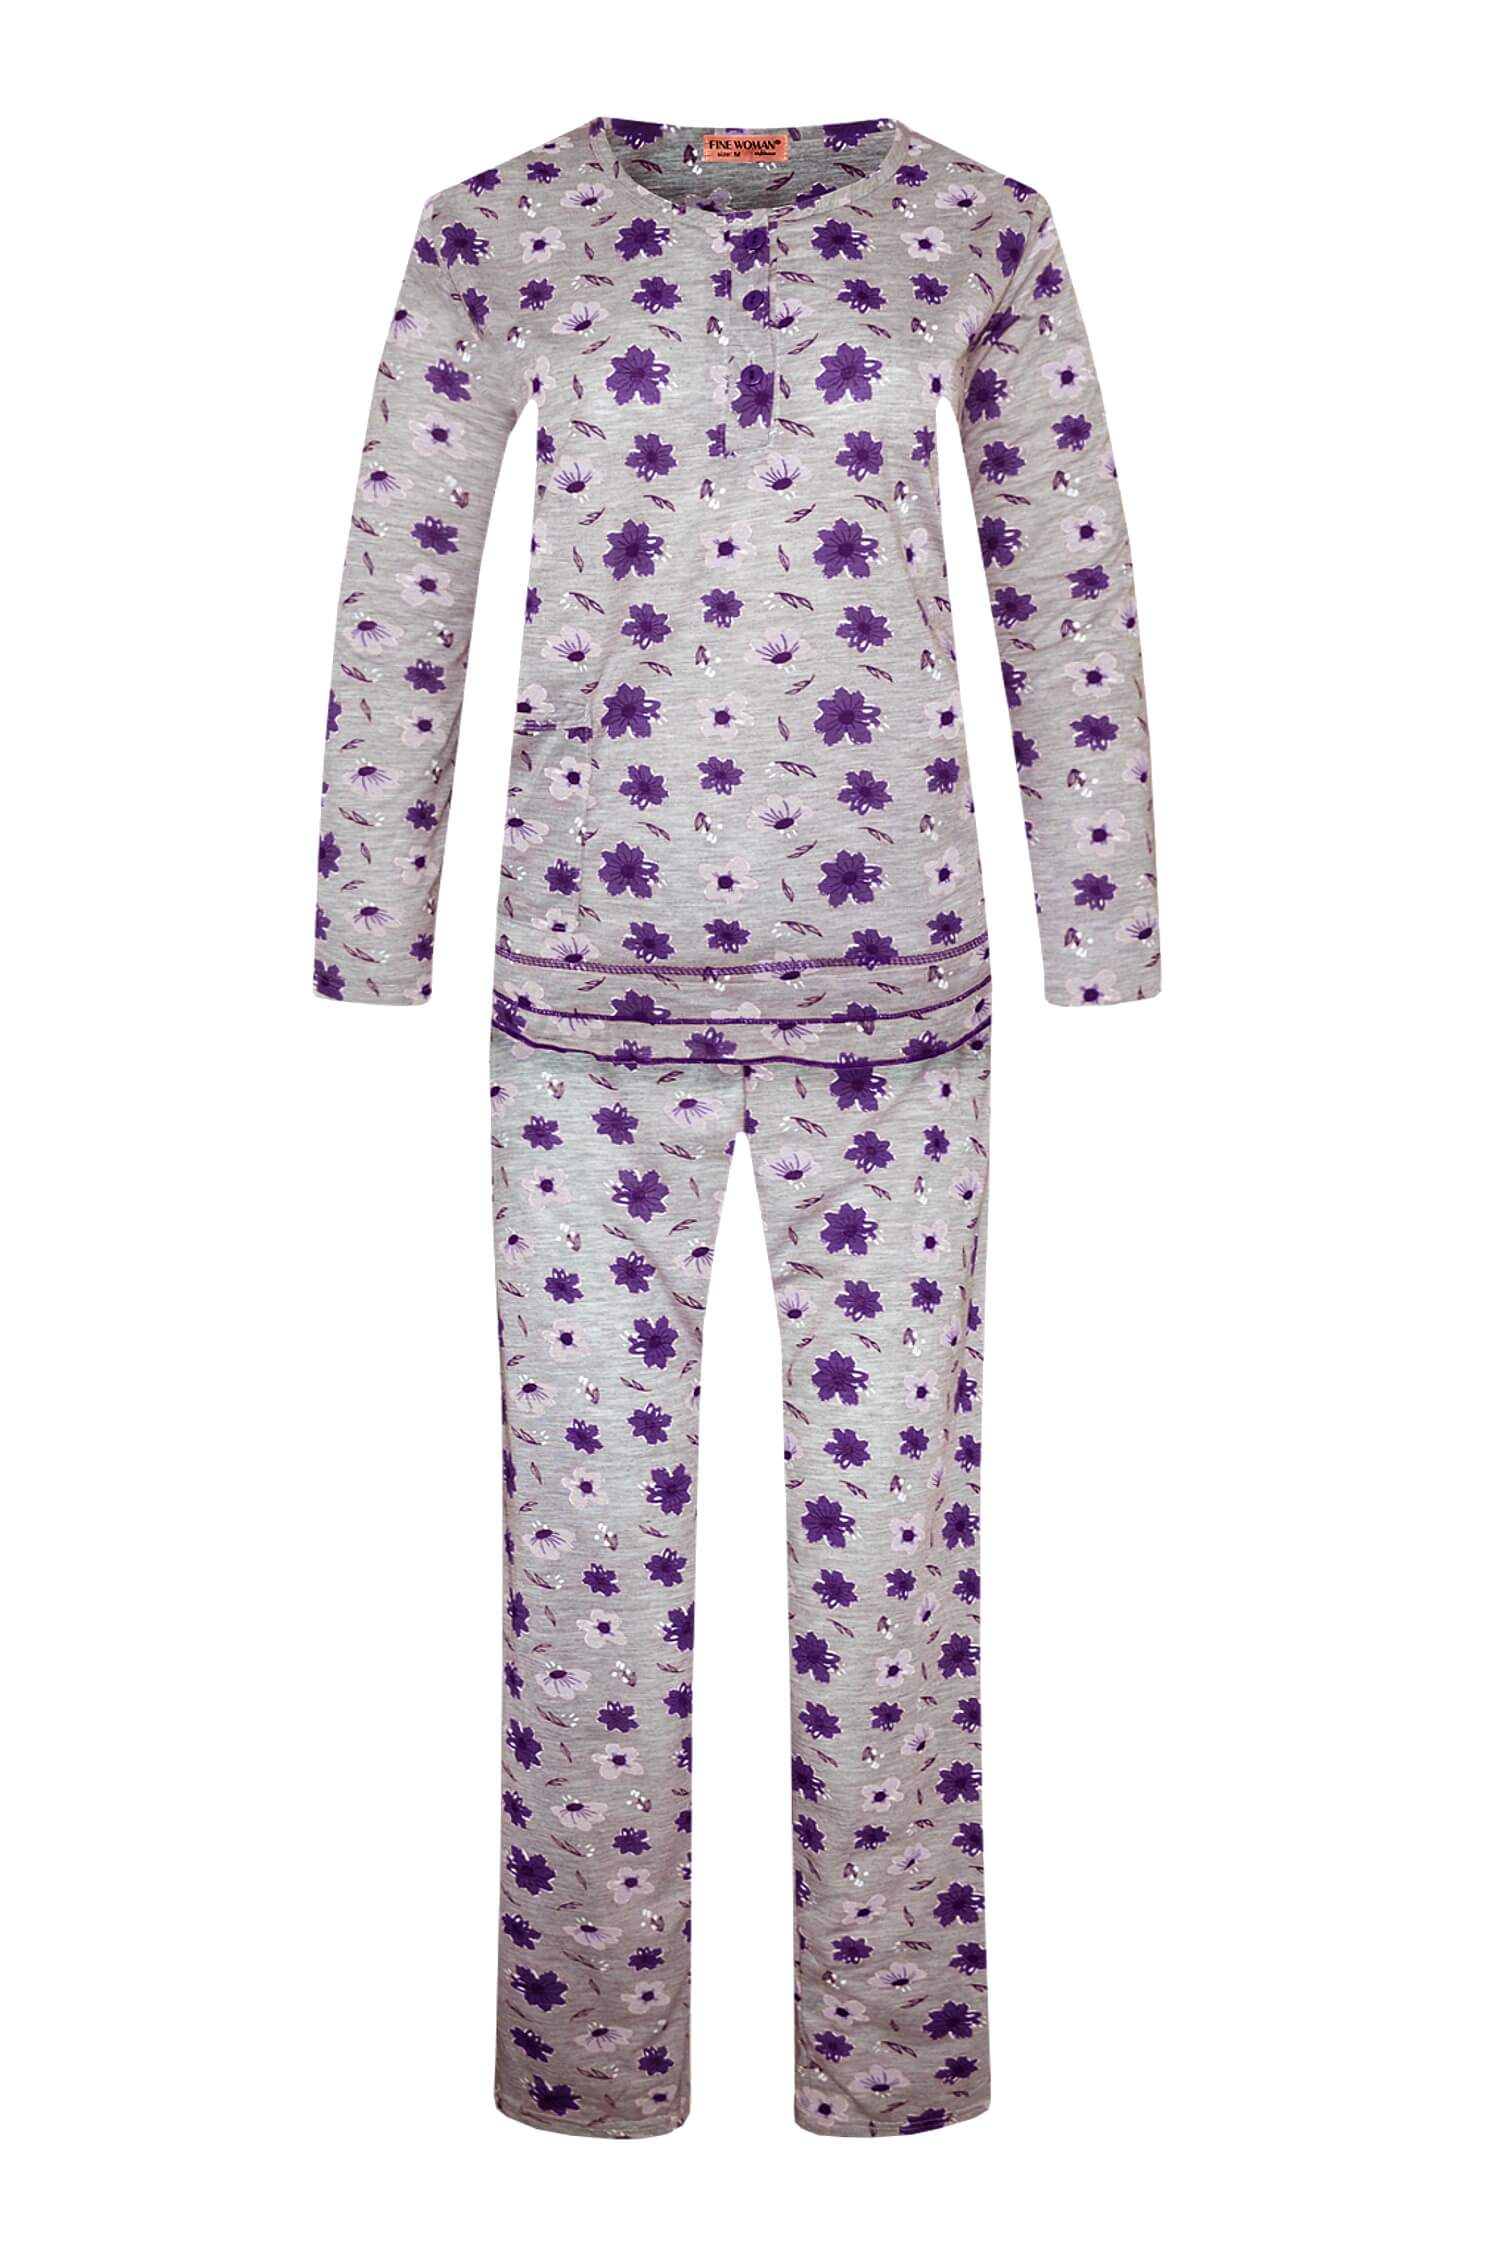 Arenda dámské dlouhé pyžamo 2297 L fialová